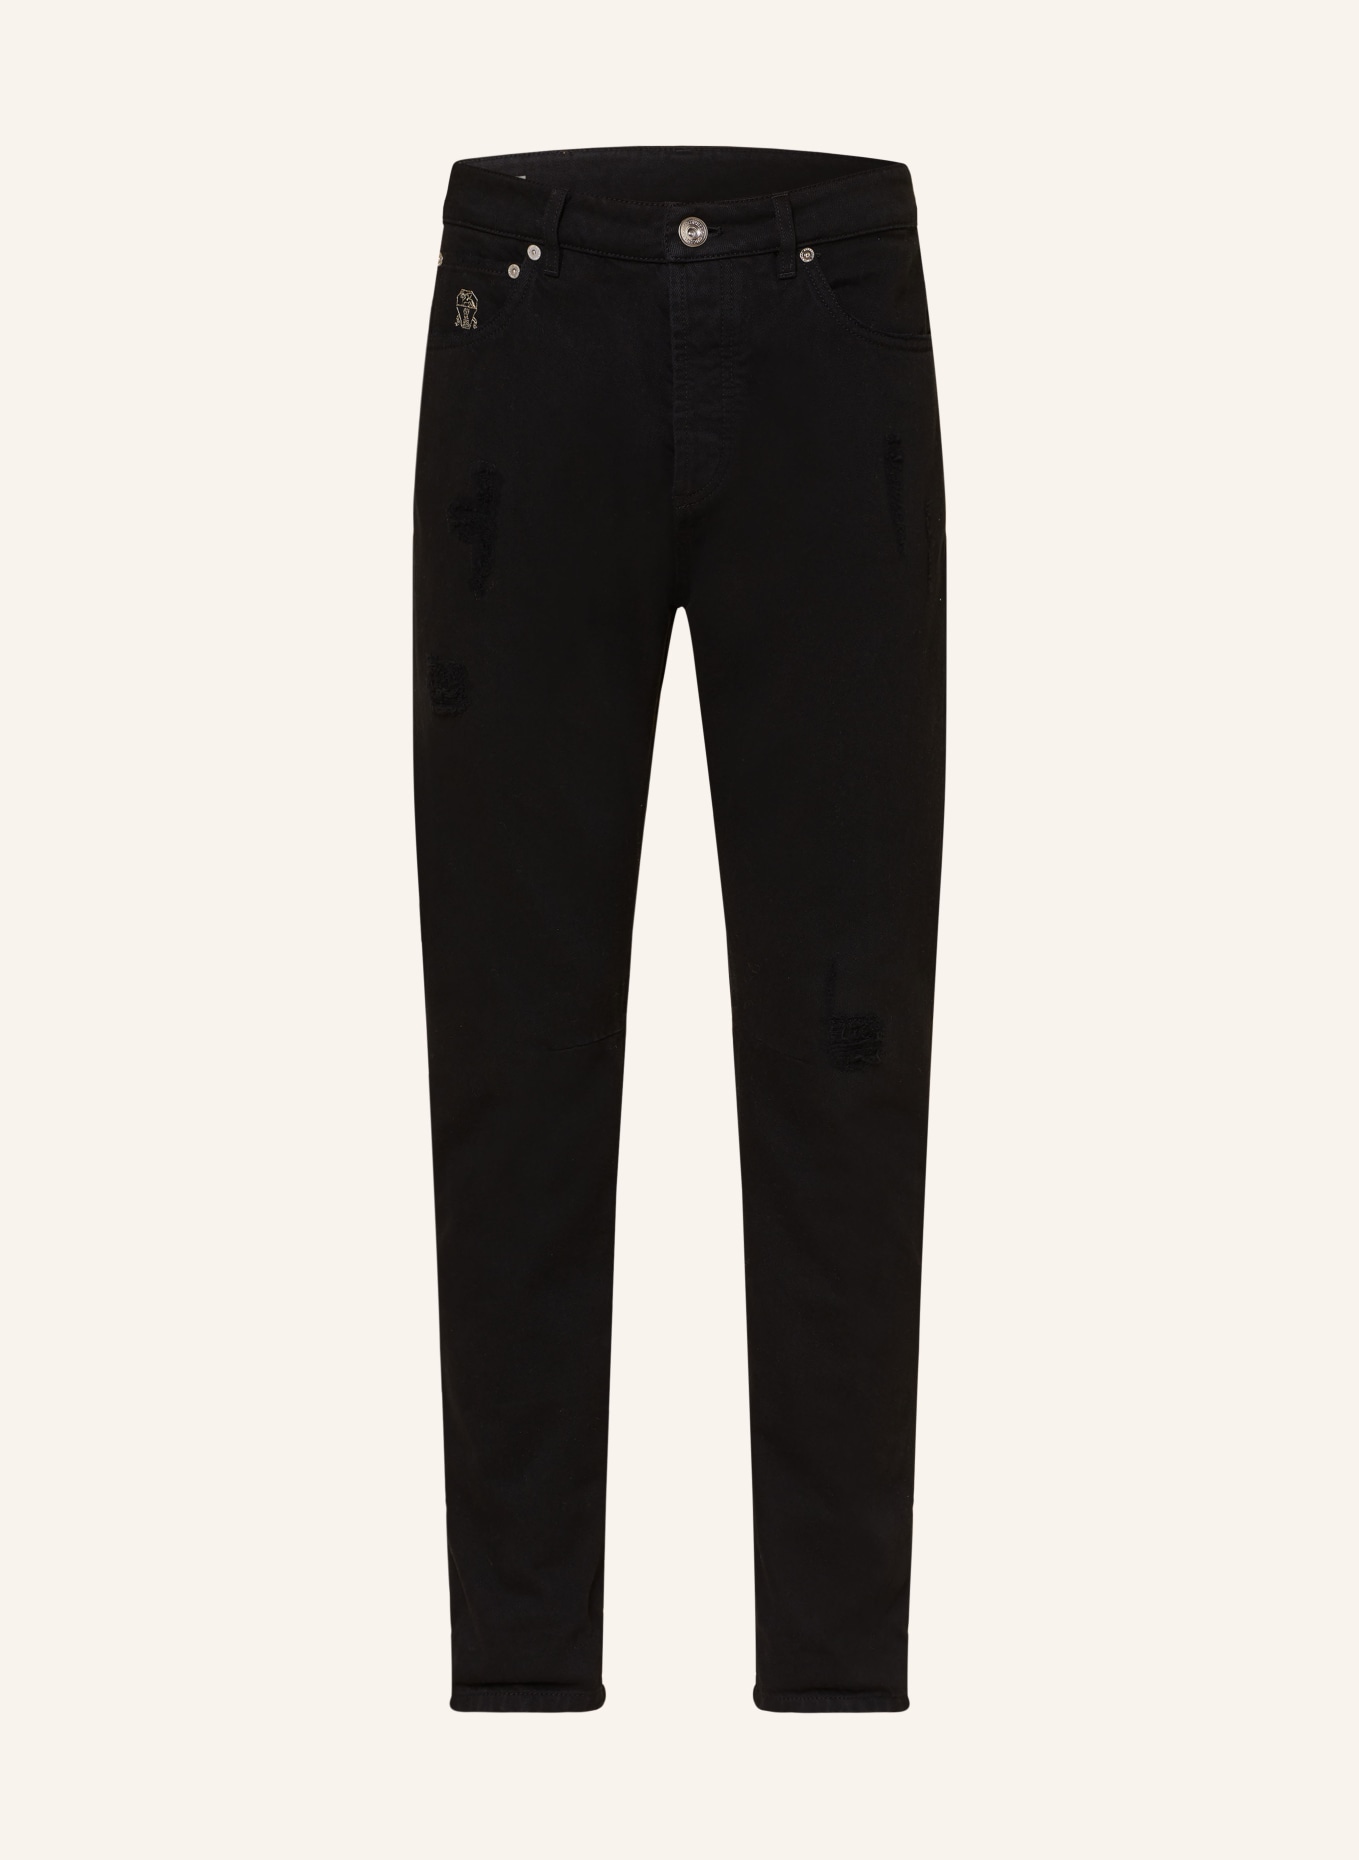 BRUNELLO CUCINELLI Jeans Leisure Fit, Farbe: C7351 Black (Bild 1)